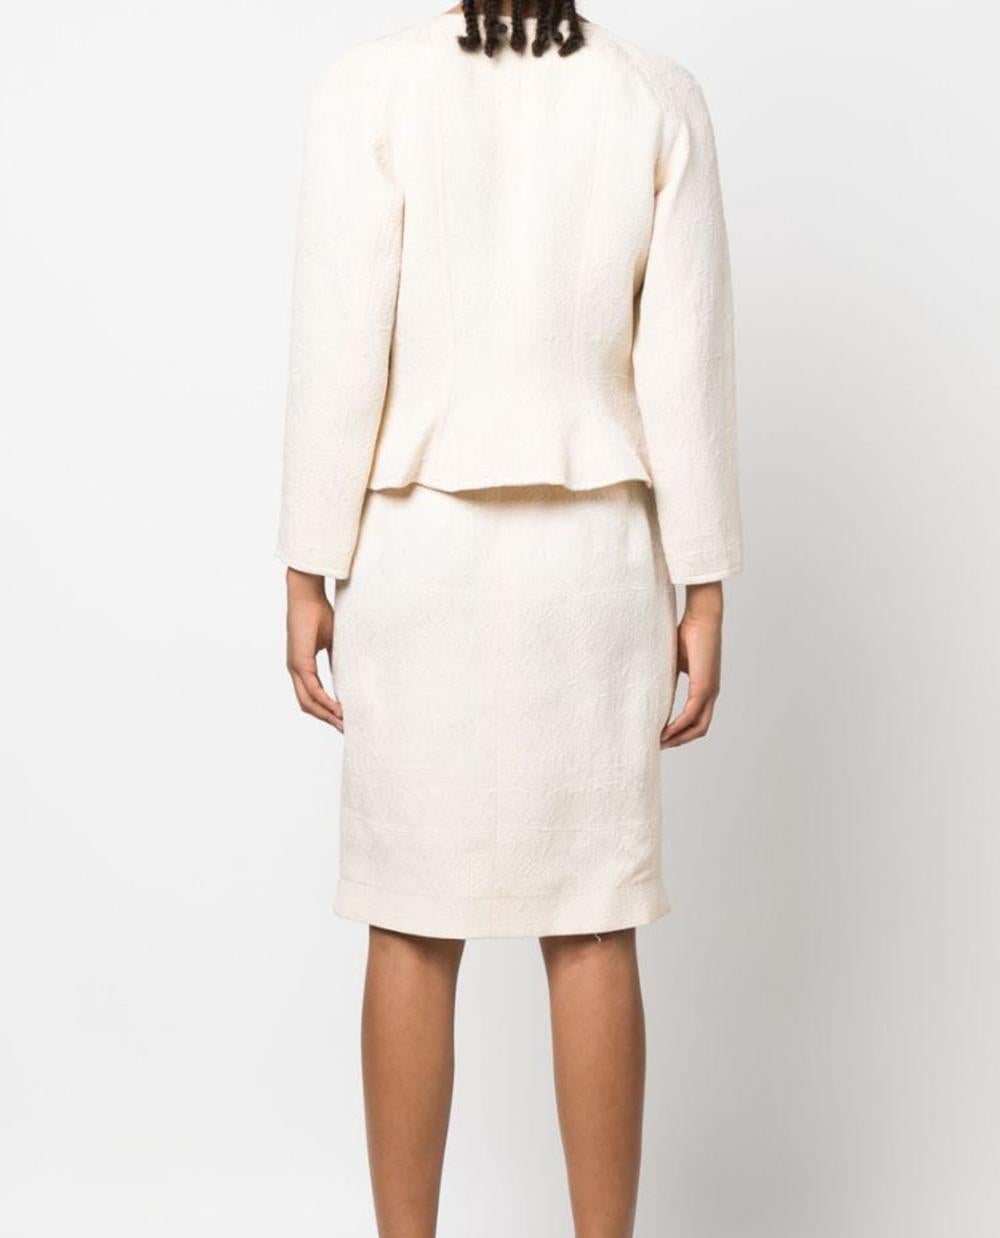 Christian Lacroix Cream Jacquard Skirt Suit For Sale 1